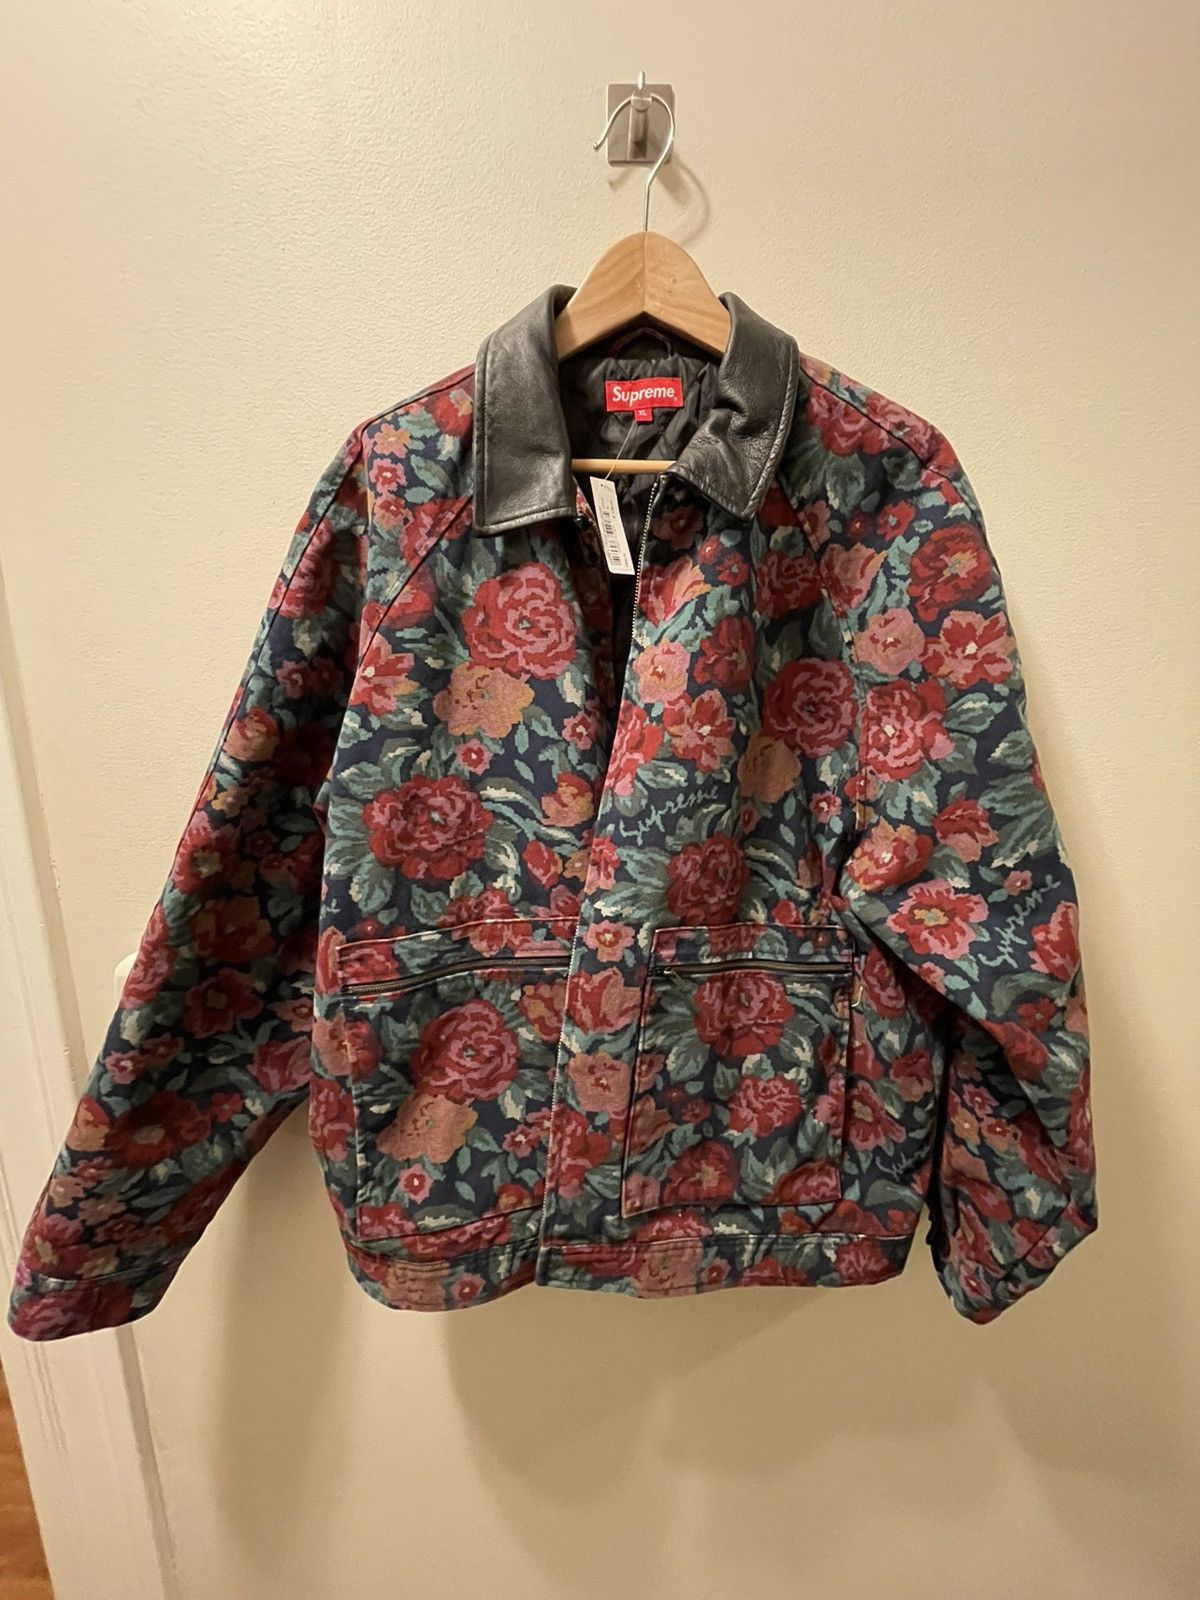 Supreme Supreme digi floral leather collar work jacket XL | Grailed